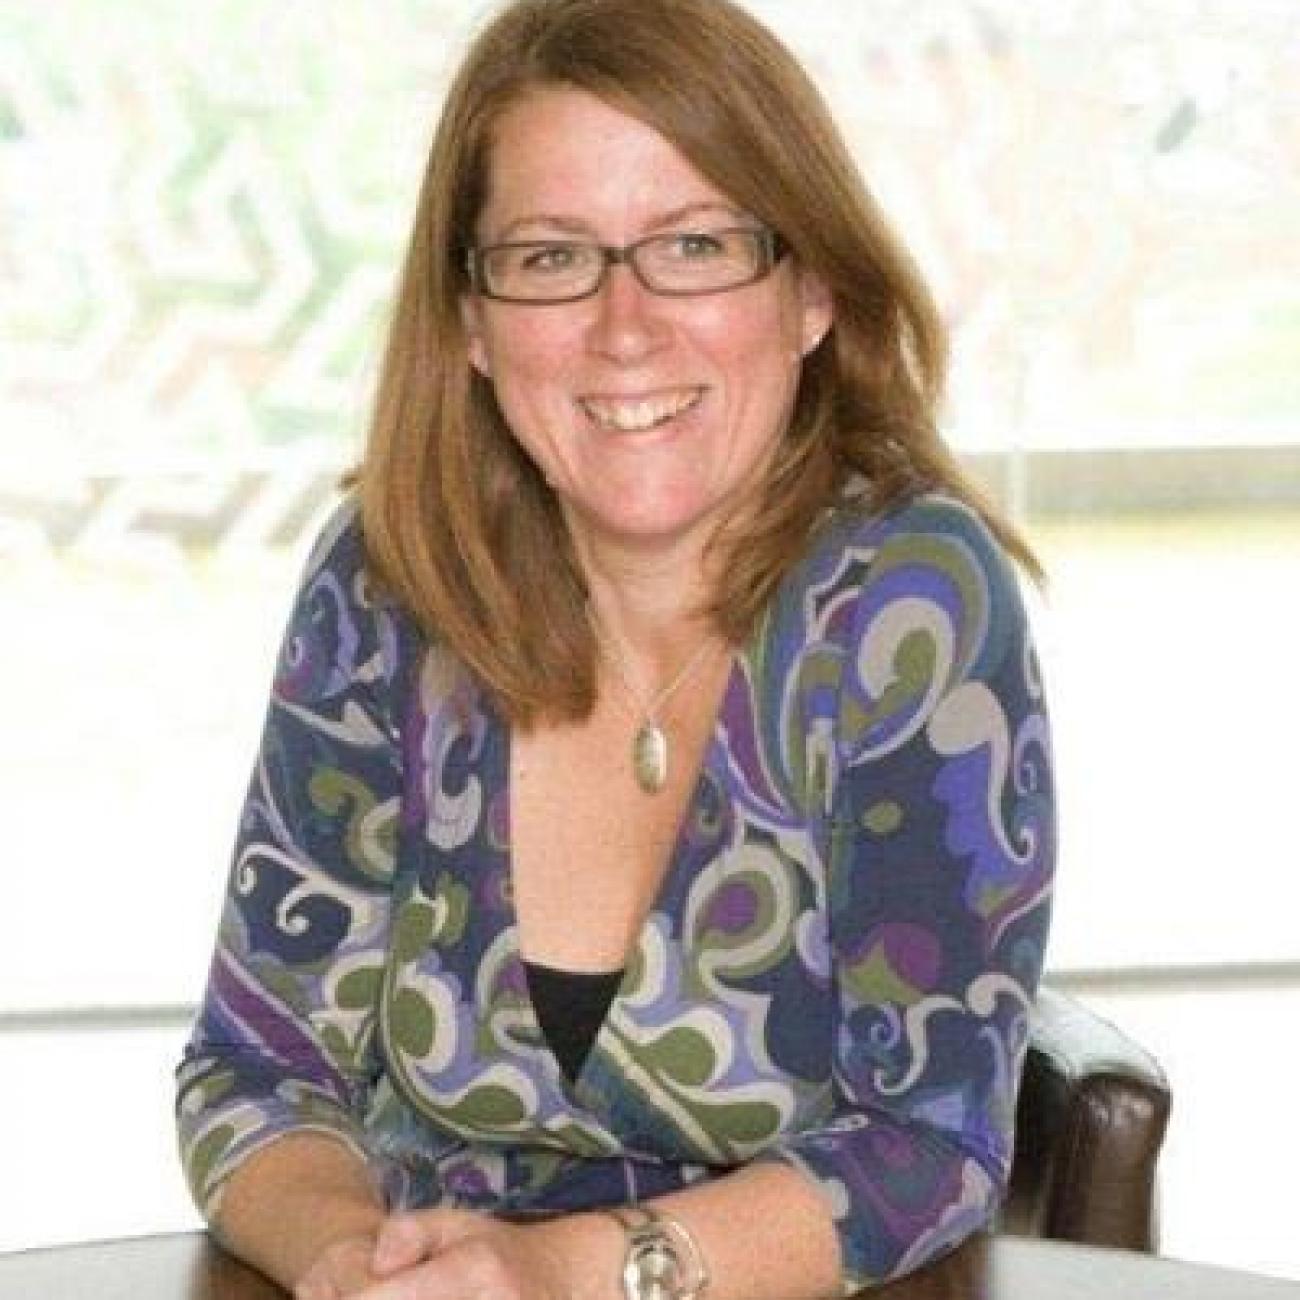 Professor Claire Foster